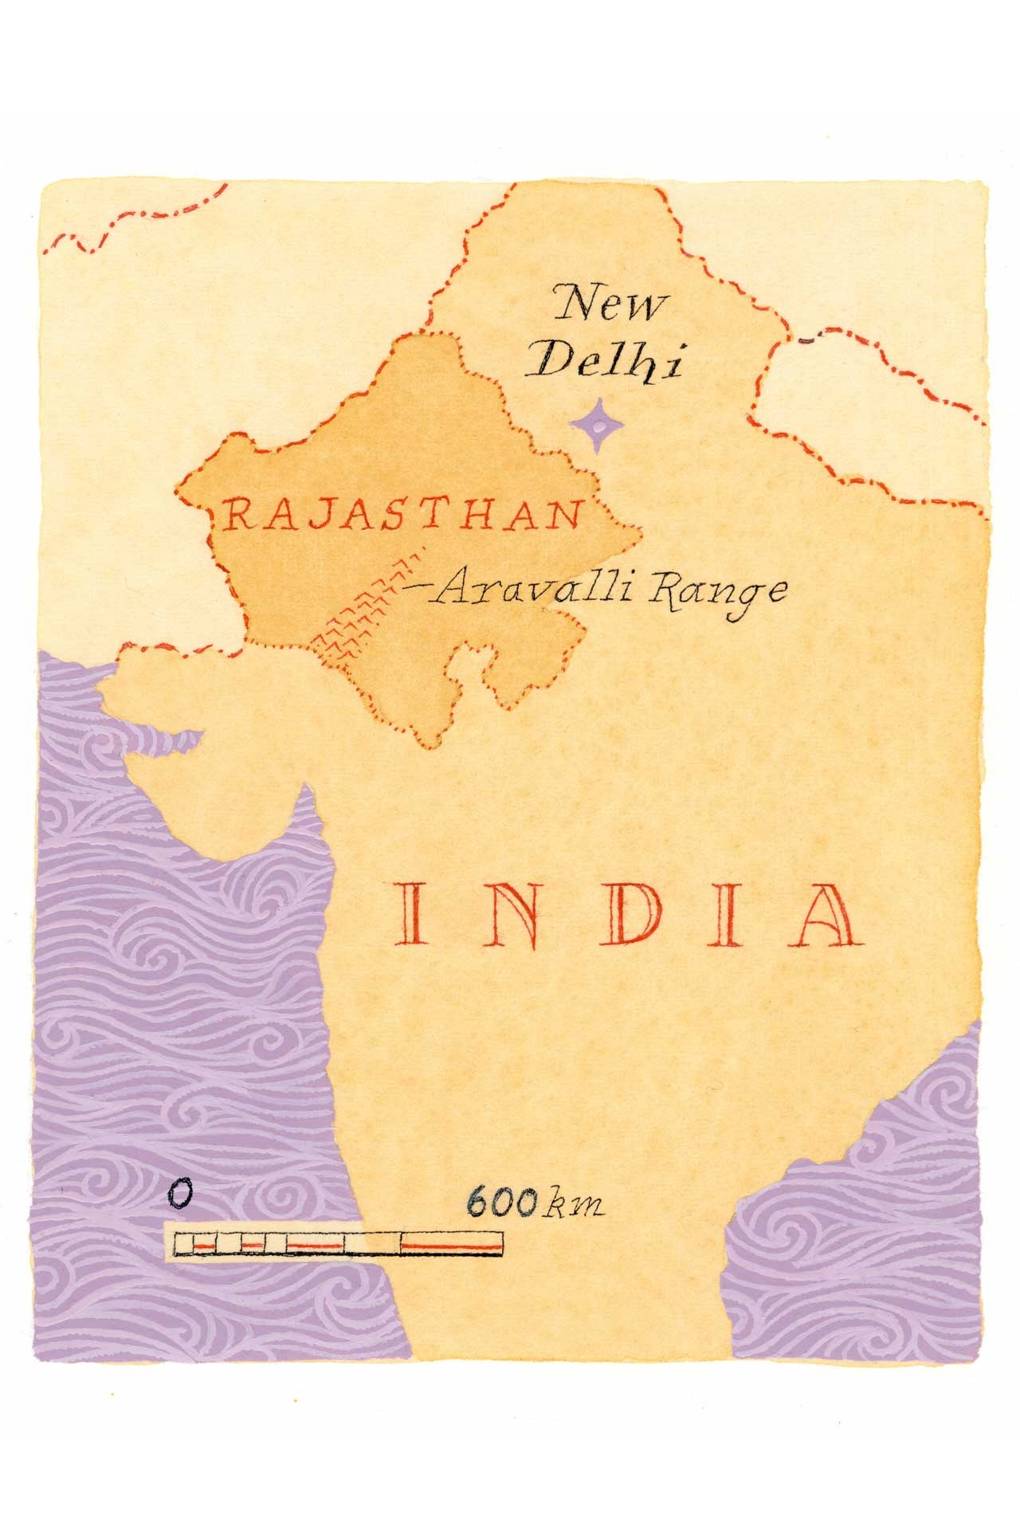 aravalli range in rajasthan map